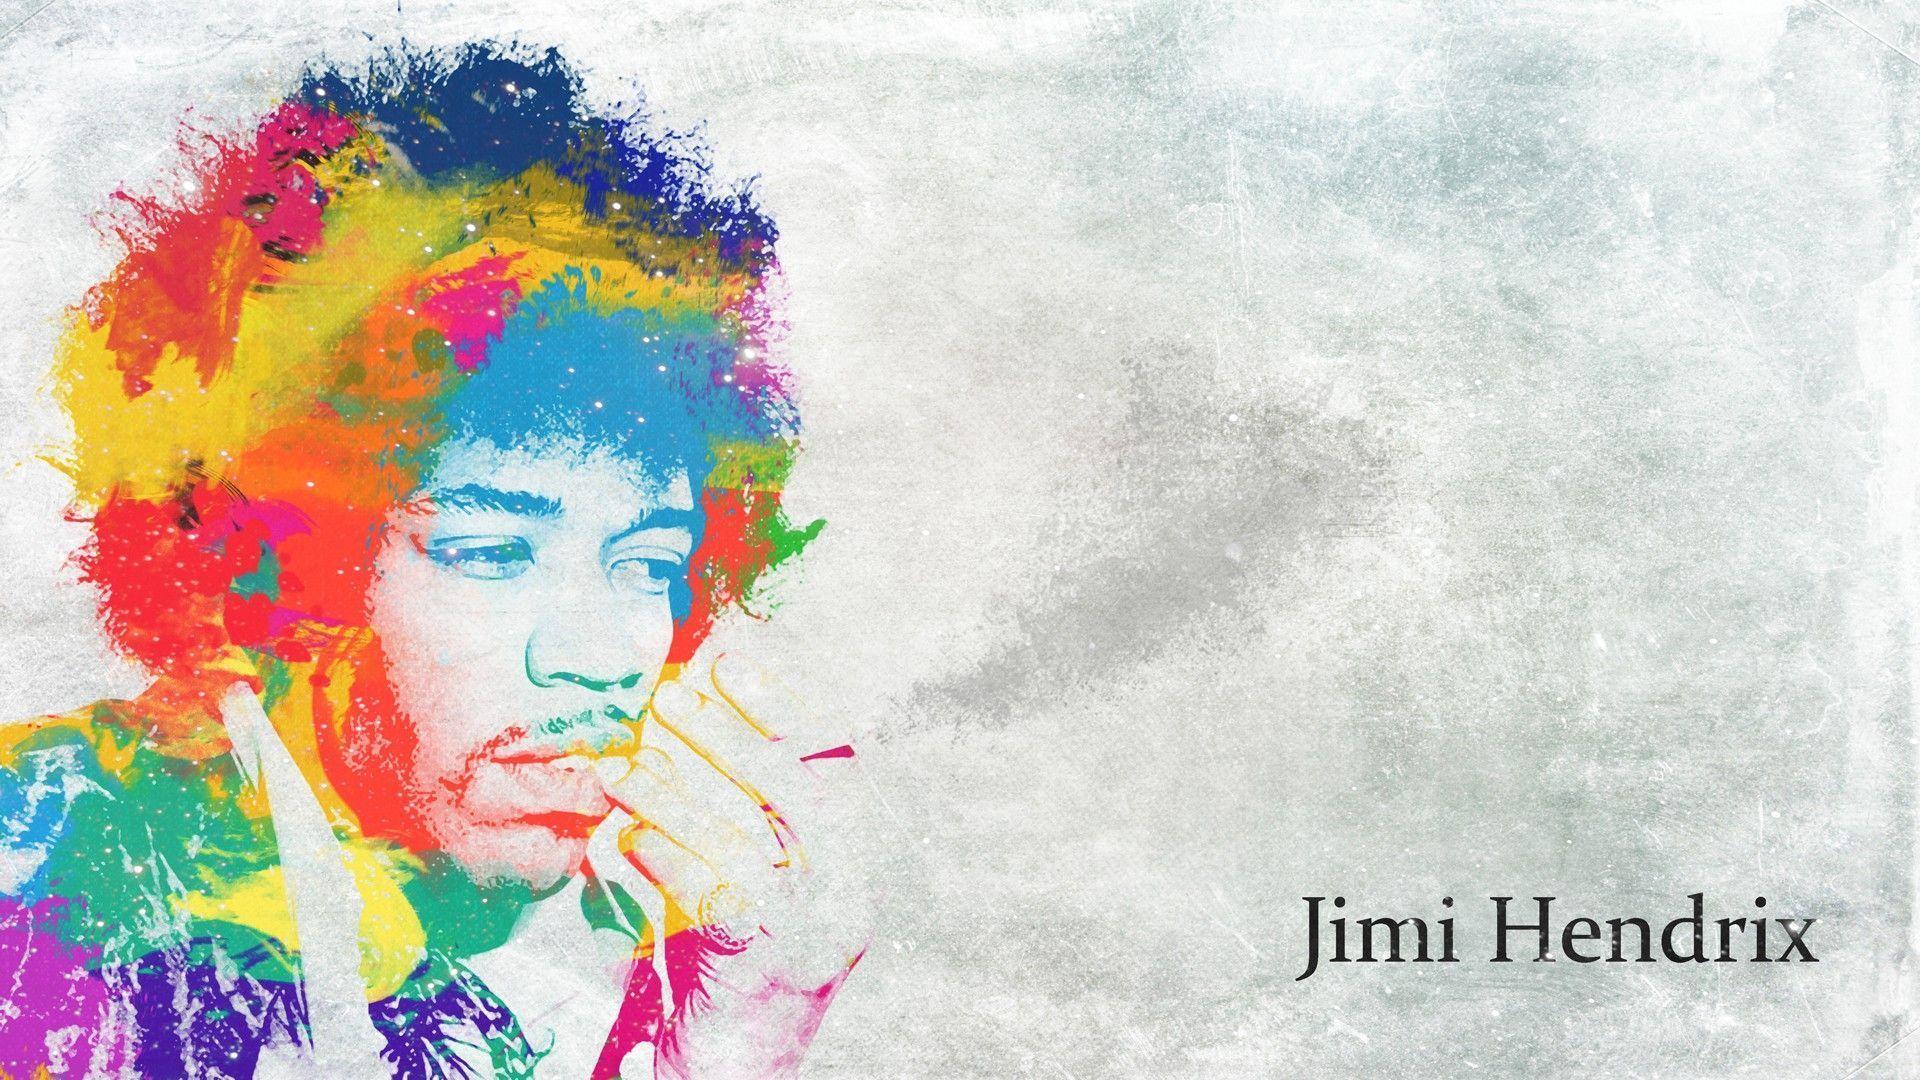 Fondos de pantalla de Jimi Hendrix. Wallpaper de Jimi Hendrix